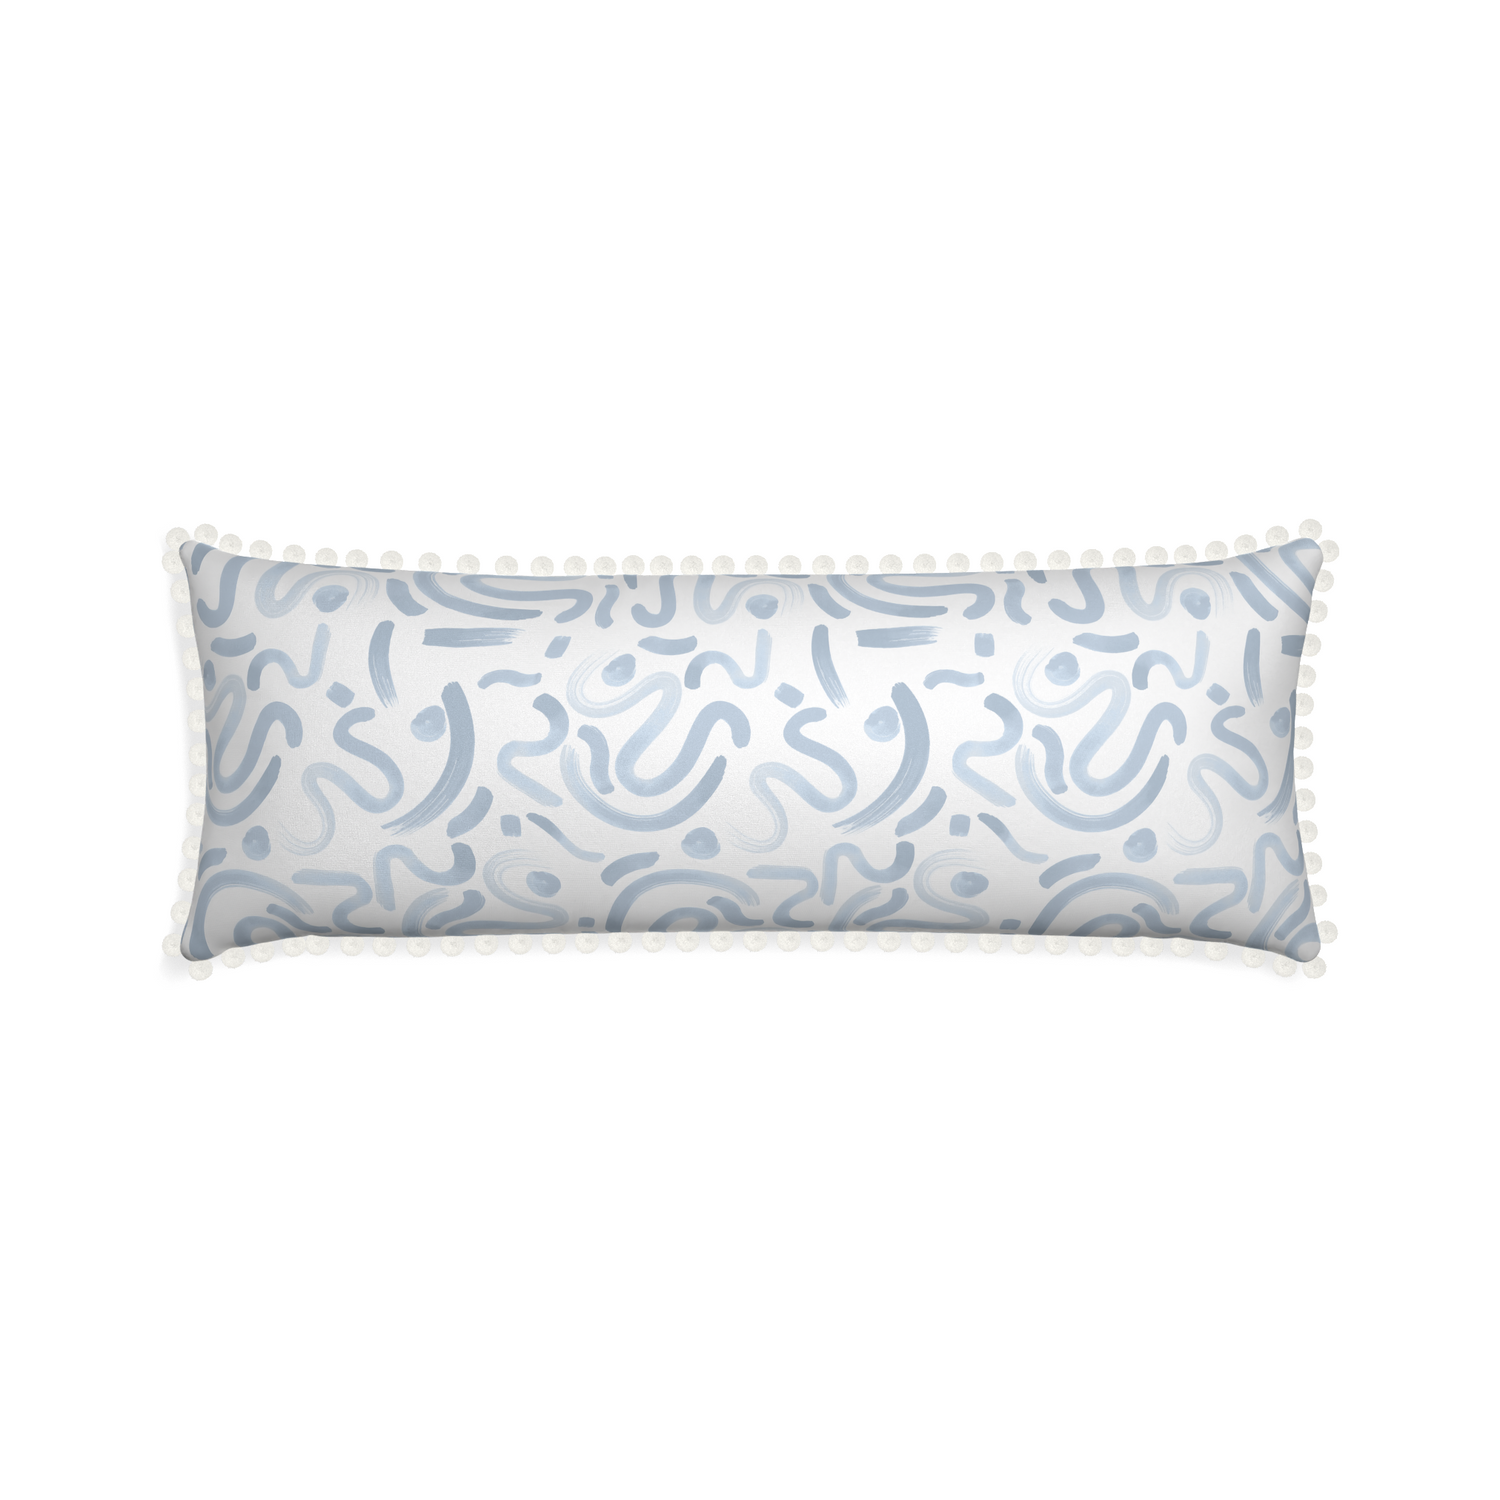 Xl-lumbar hockney sky custom pillow with snow pom pom on white background